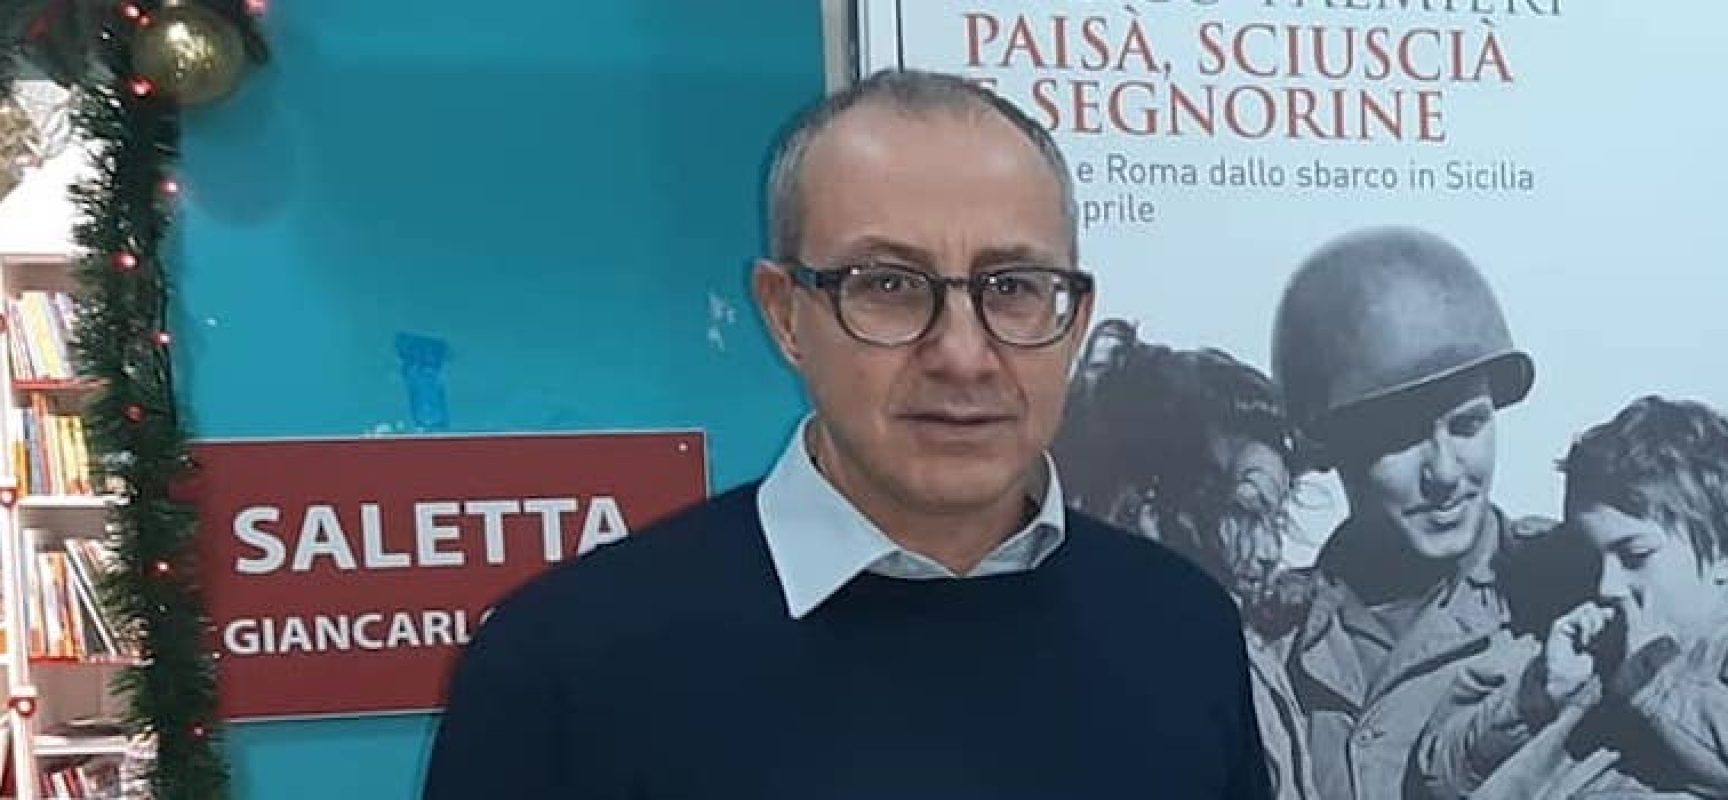 Lo storico Mario Avagliano a Bisceglie presenta il libro “Paisà, sciuscià e segnorine”